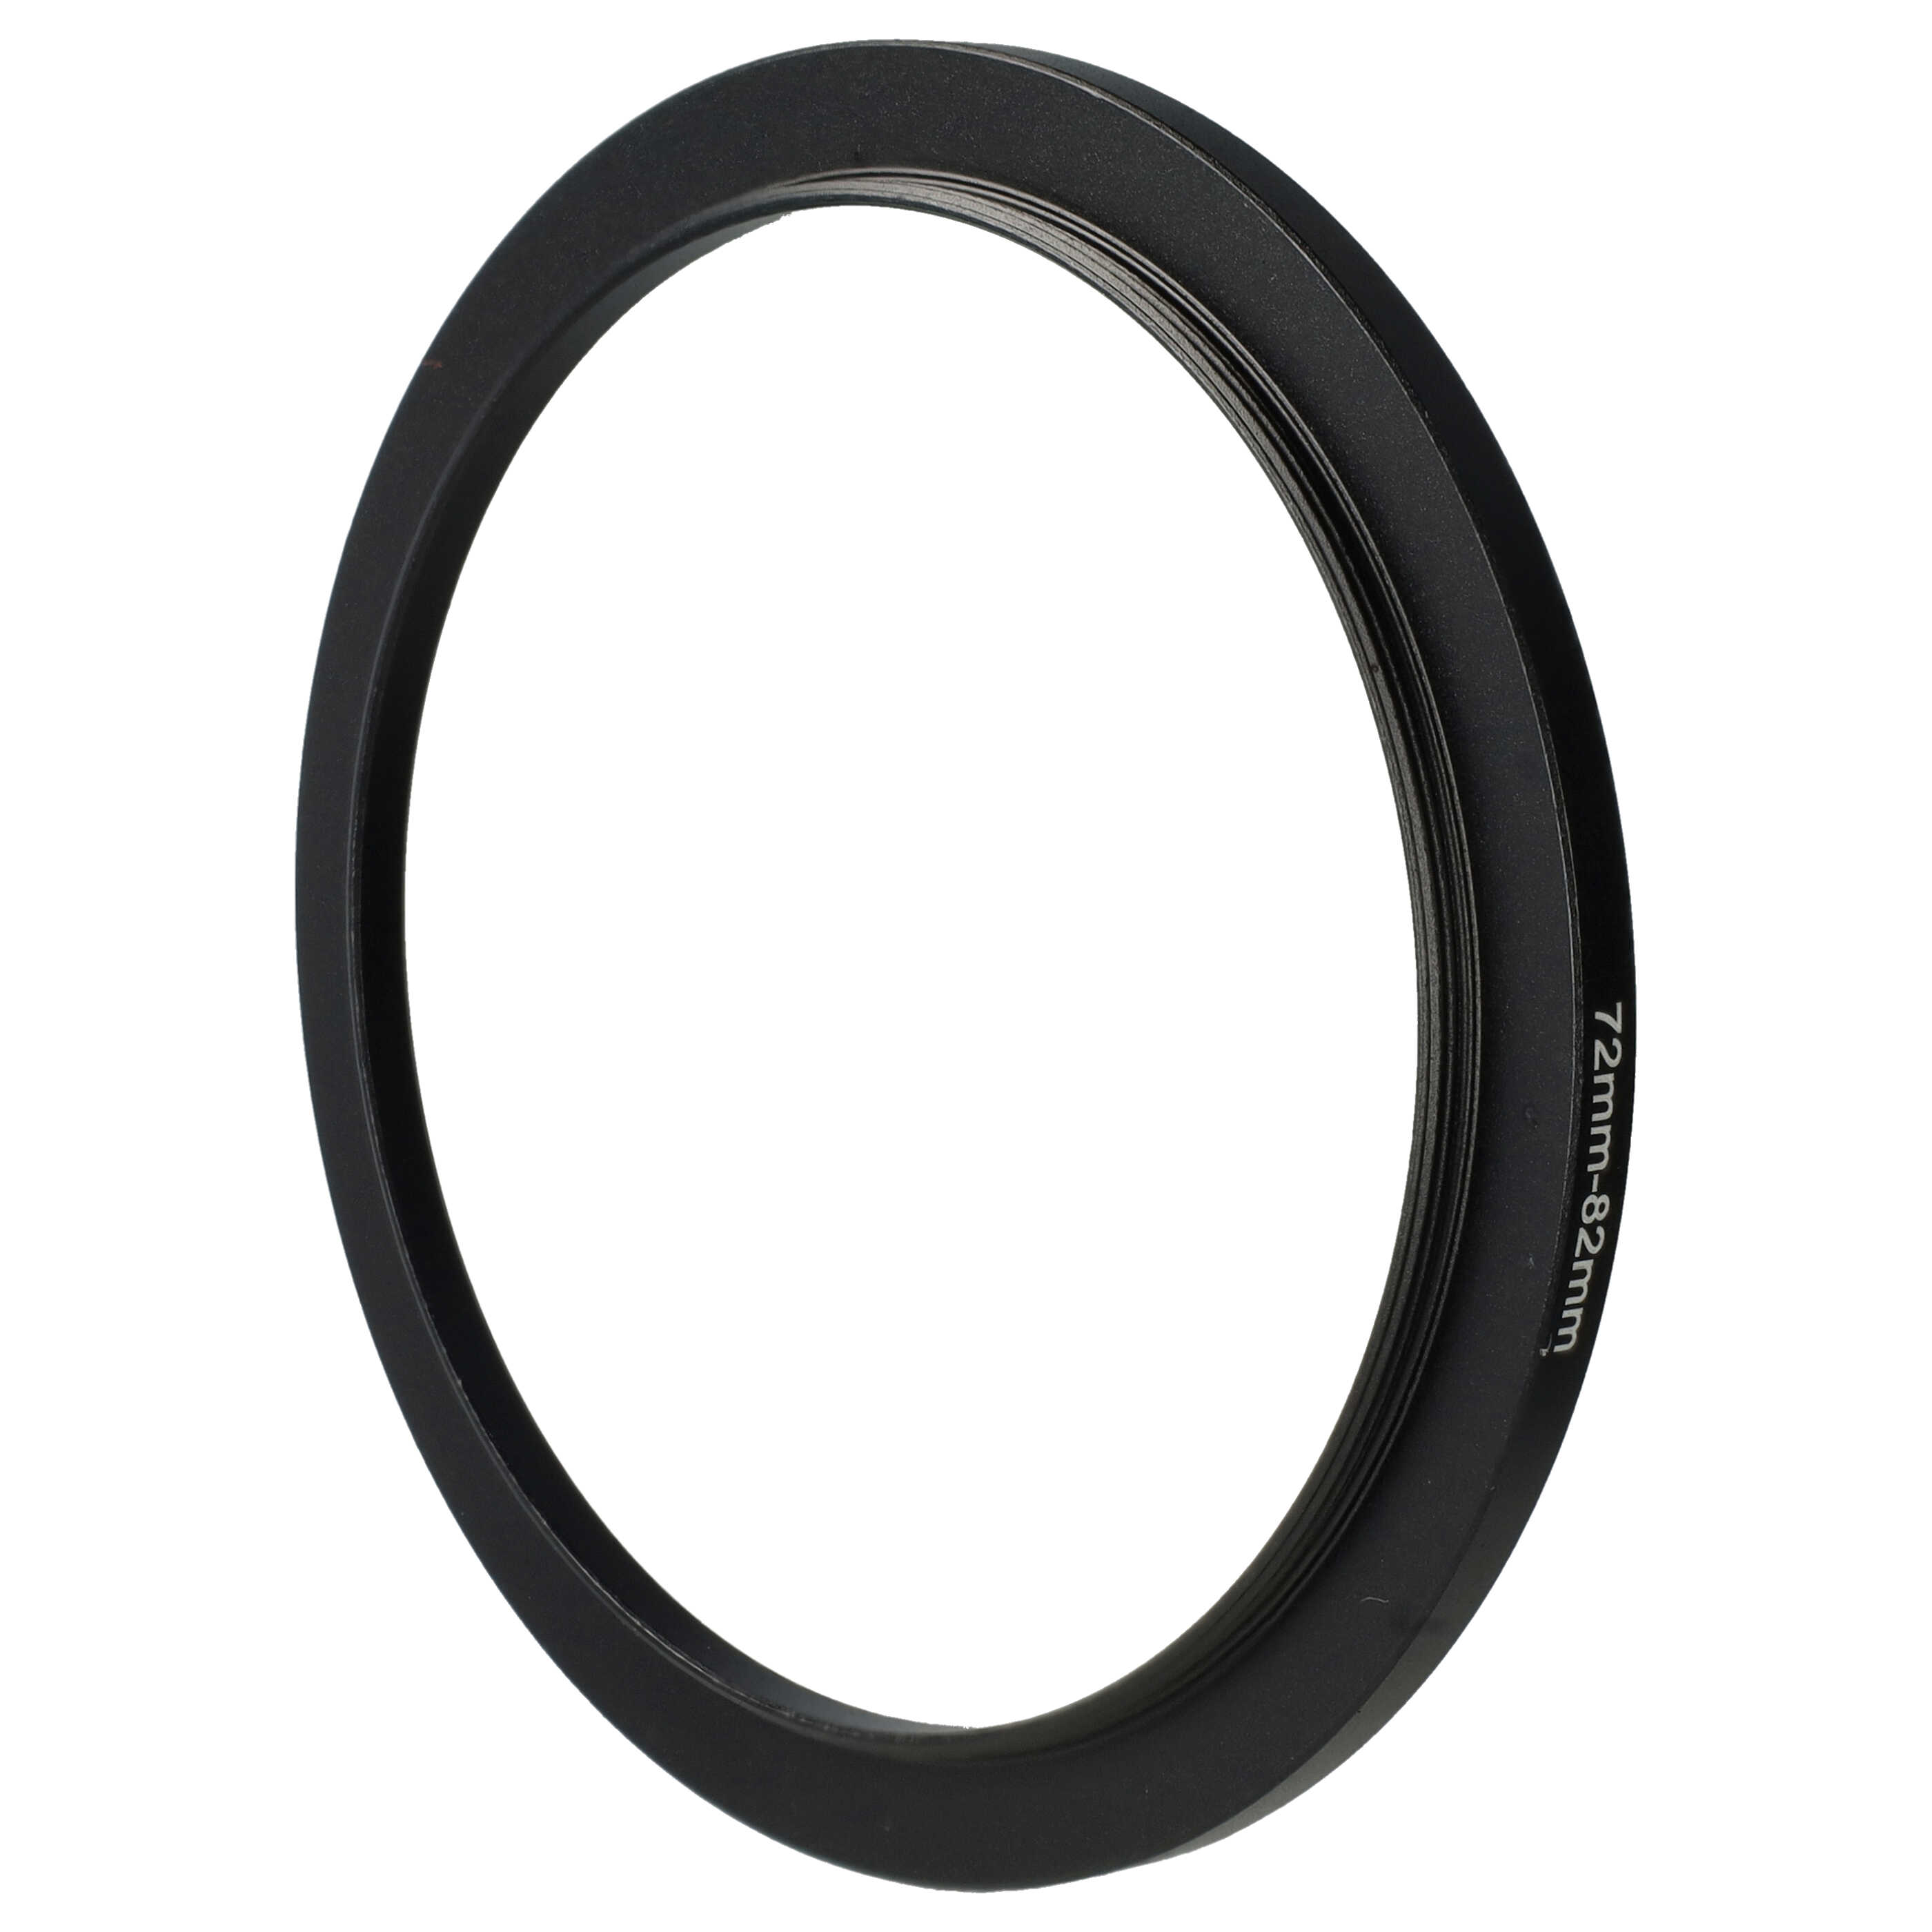 Step-Up-Ring Adapter 72 mm auf 82 mm passend für diverse Kamera-Objektive - Filteradapter